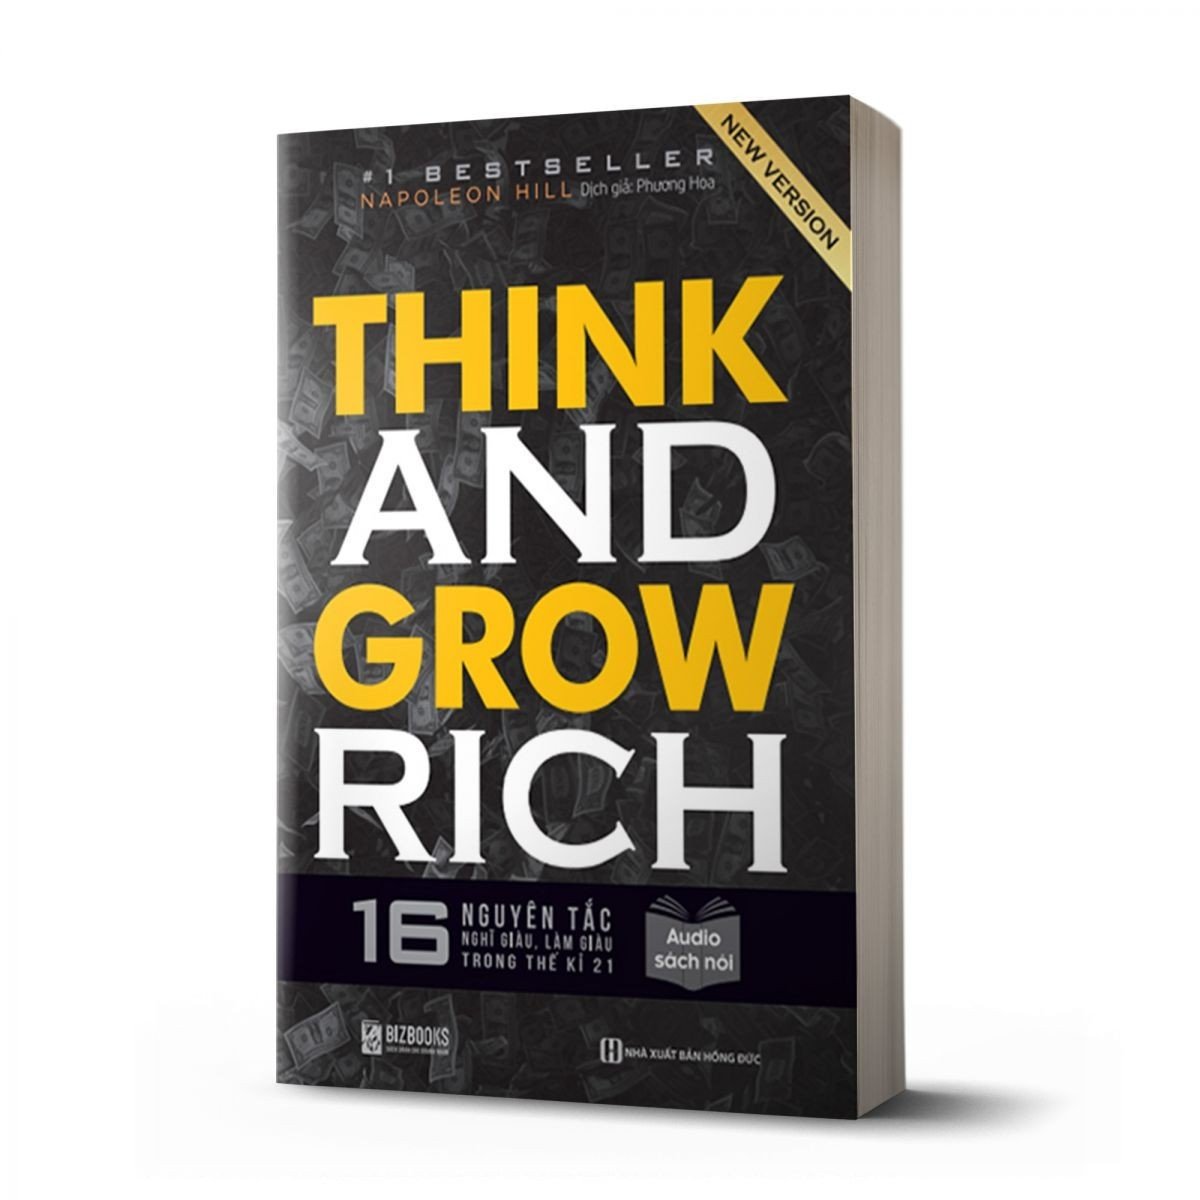 Think And Grow Rich - 16 Nguyên Tắc Nghĩ Giàu, Làm Giàu Trong Thế Kỉ 21